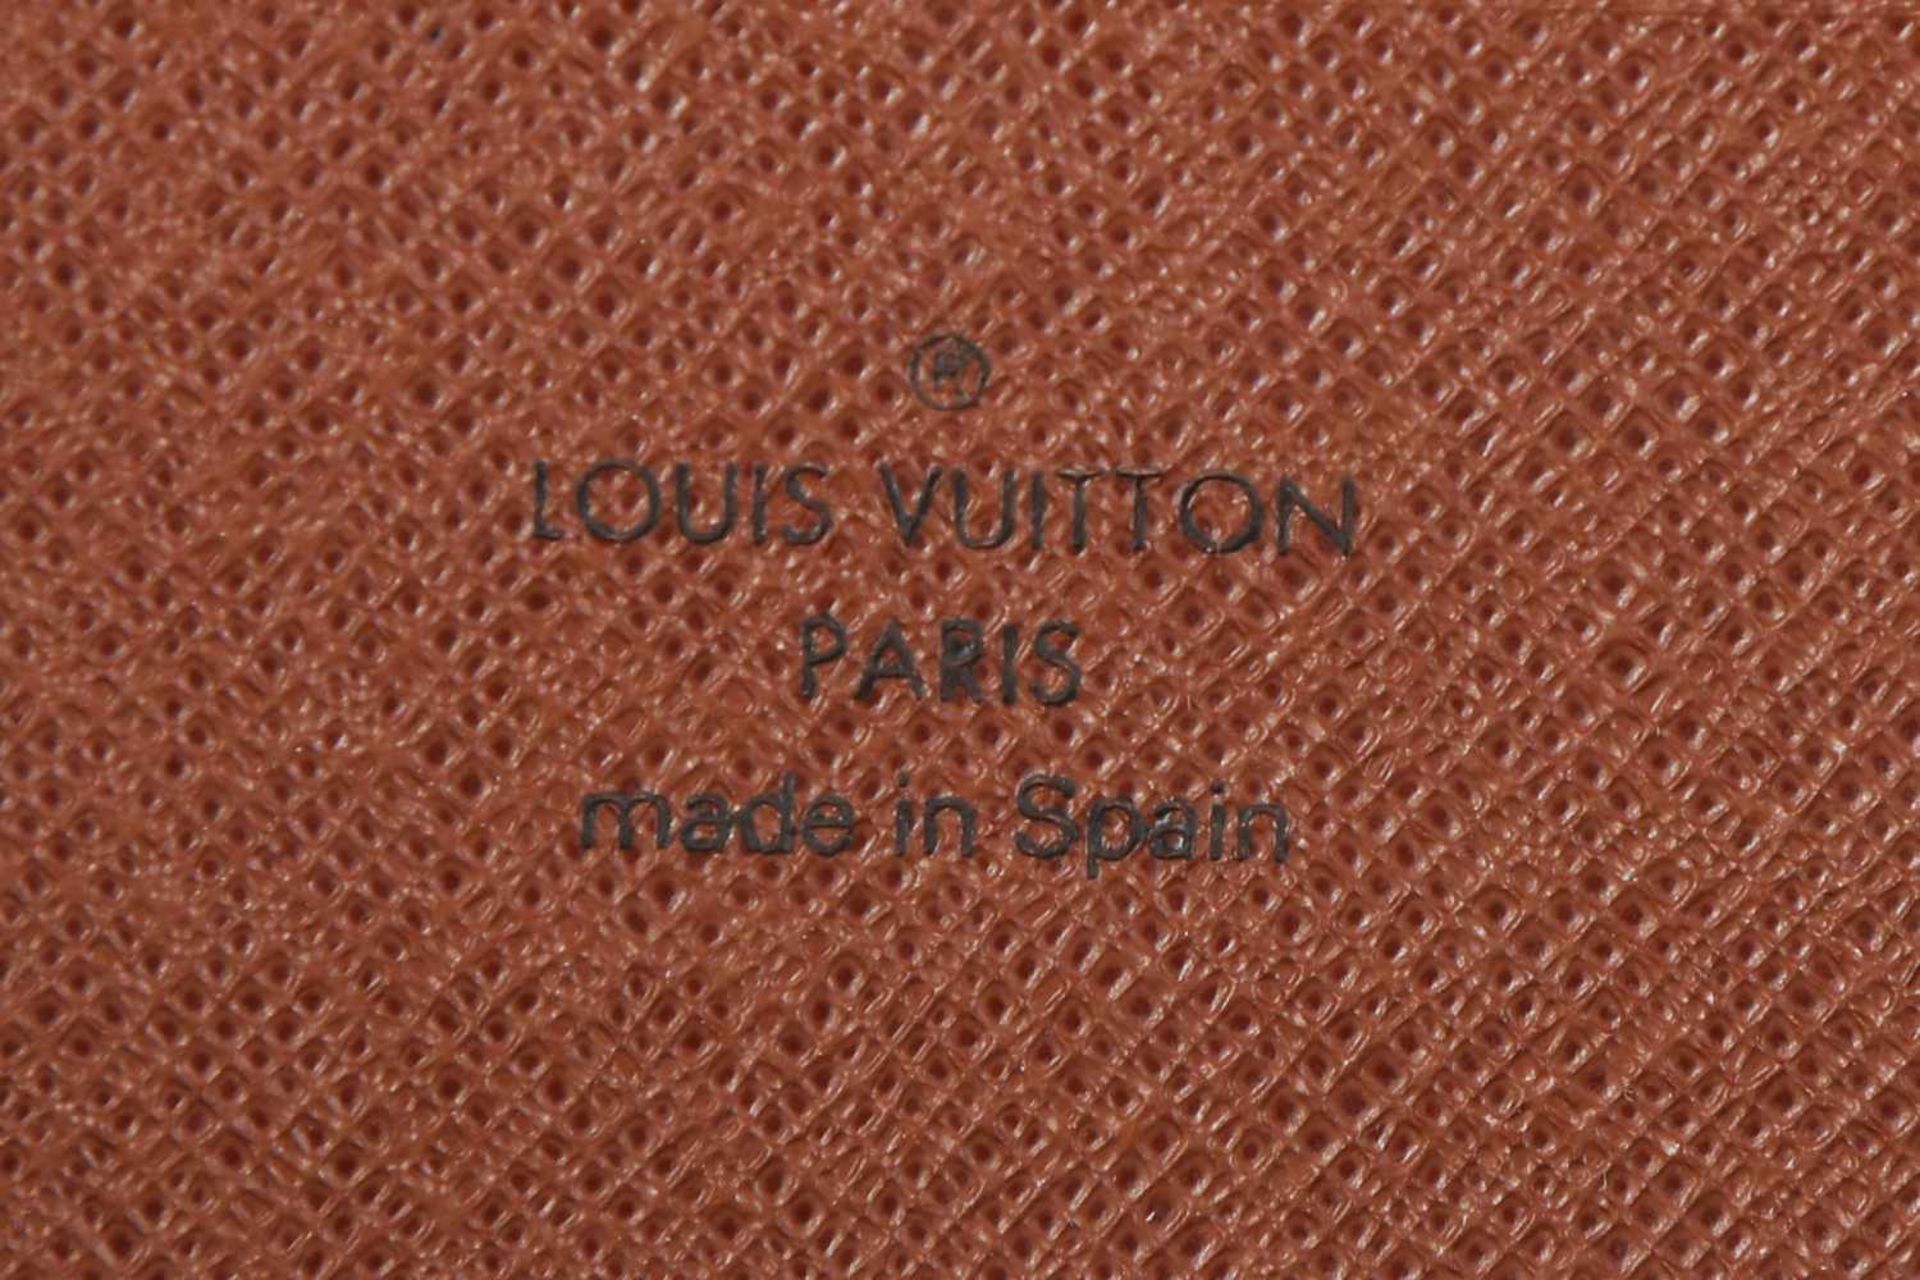 LOUIS VUITTON OrganizerMonogramm-Canvas und Leder, braun, 2008 gekauft, ca. 21x12cm - Bild 2 aus 2